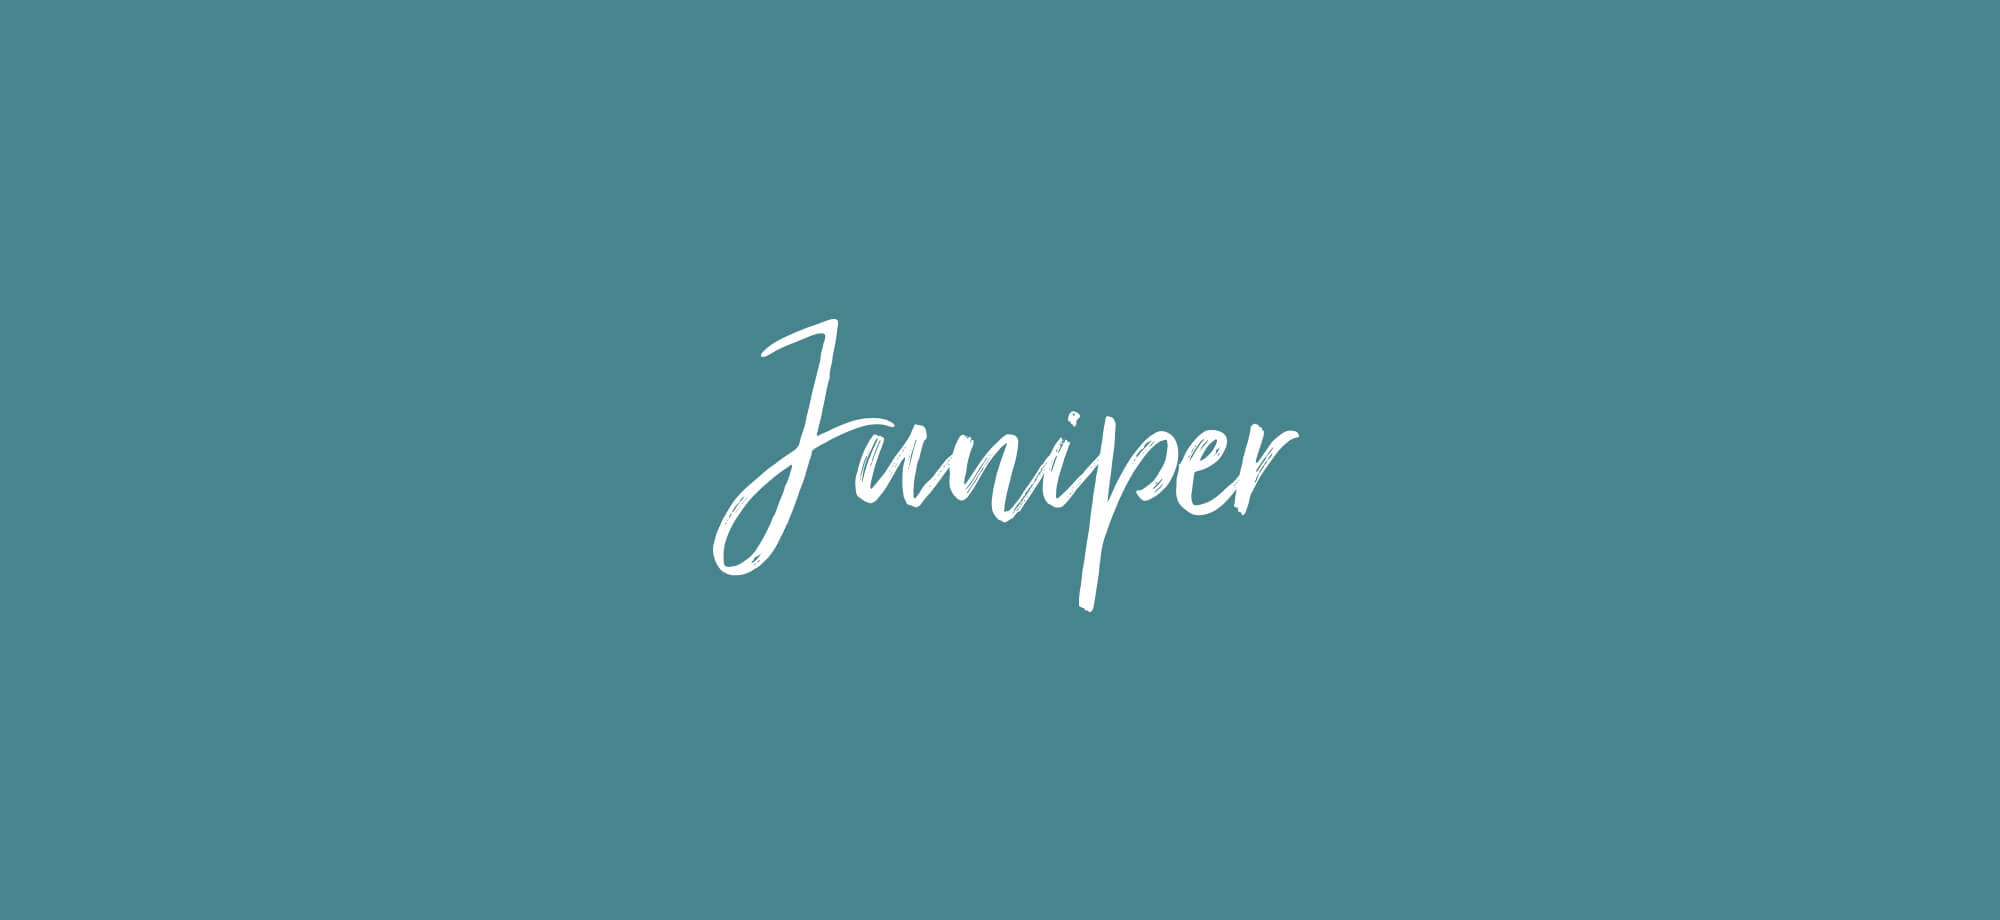 Juniper word mark